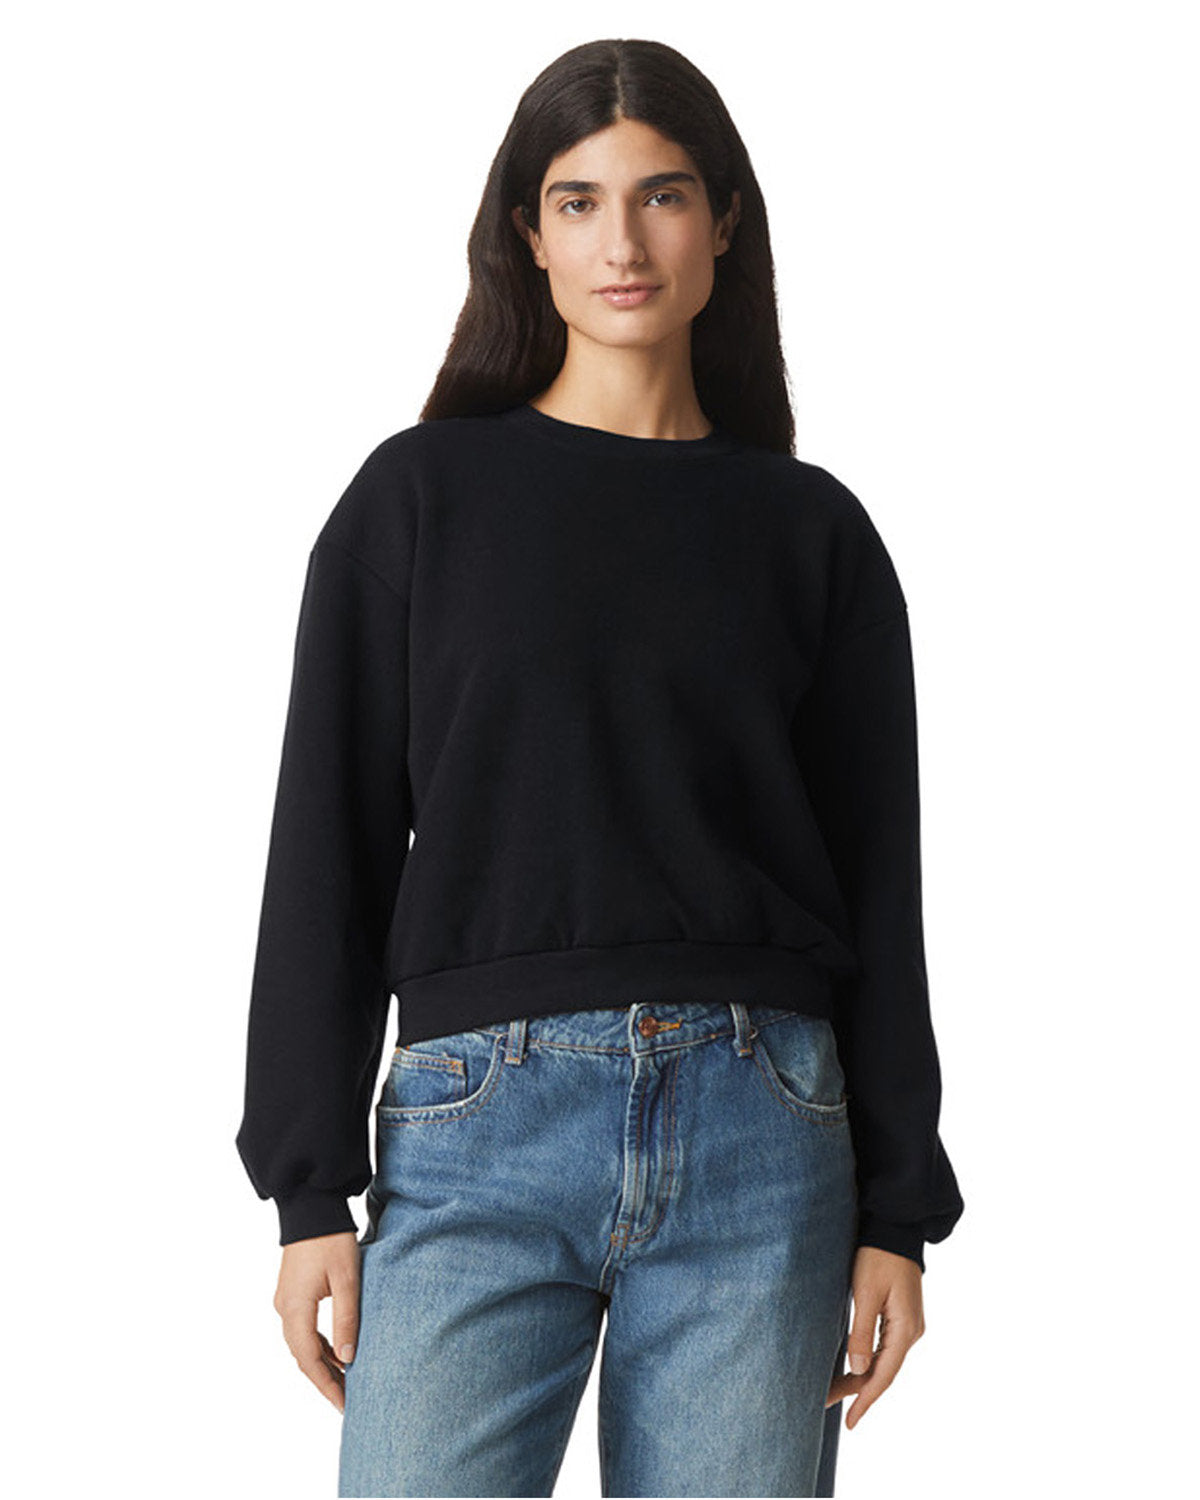 American Apparel Ladies' ReFlex Fleece Crewneck Sweatshirt: Redefining Cozy Chic